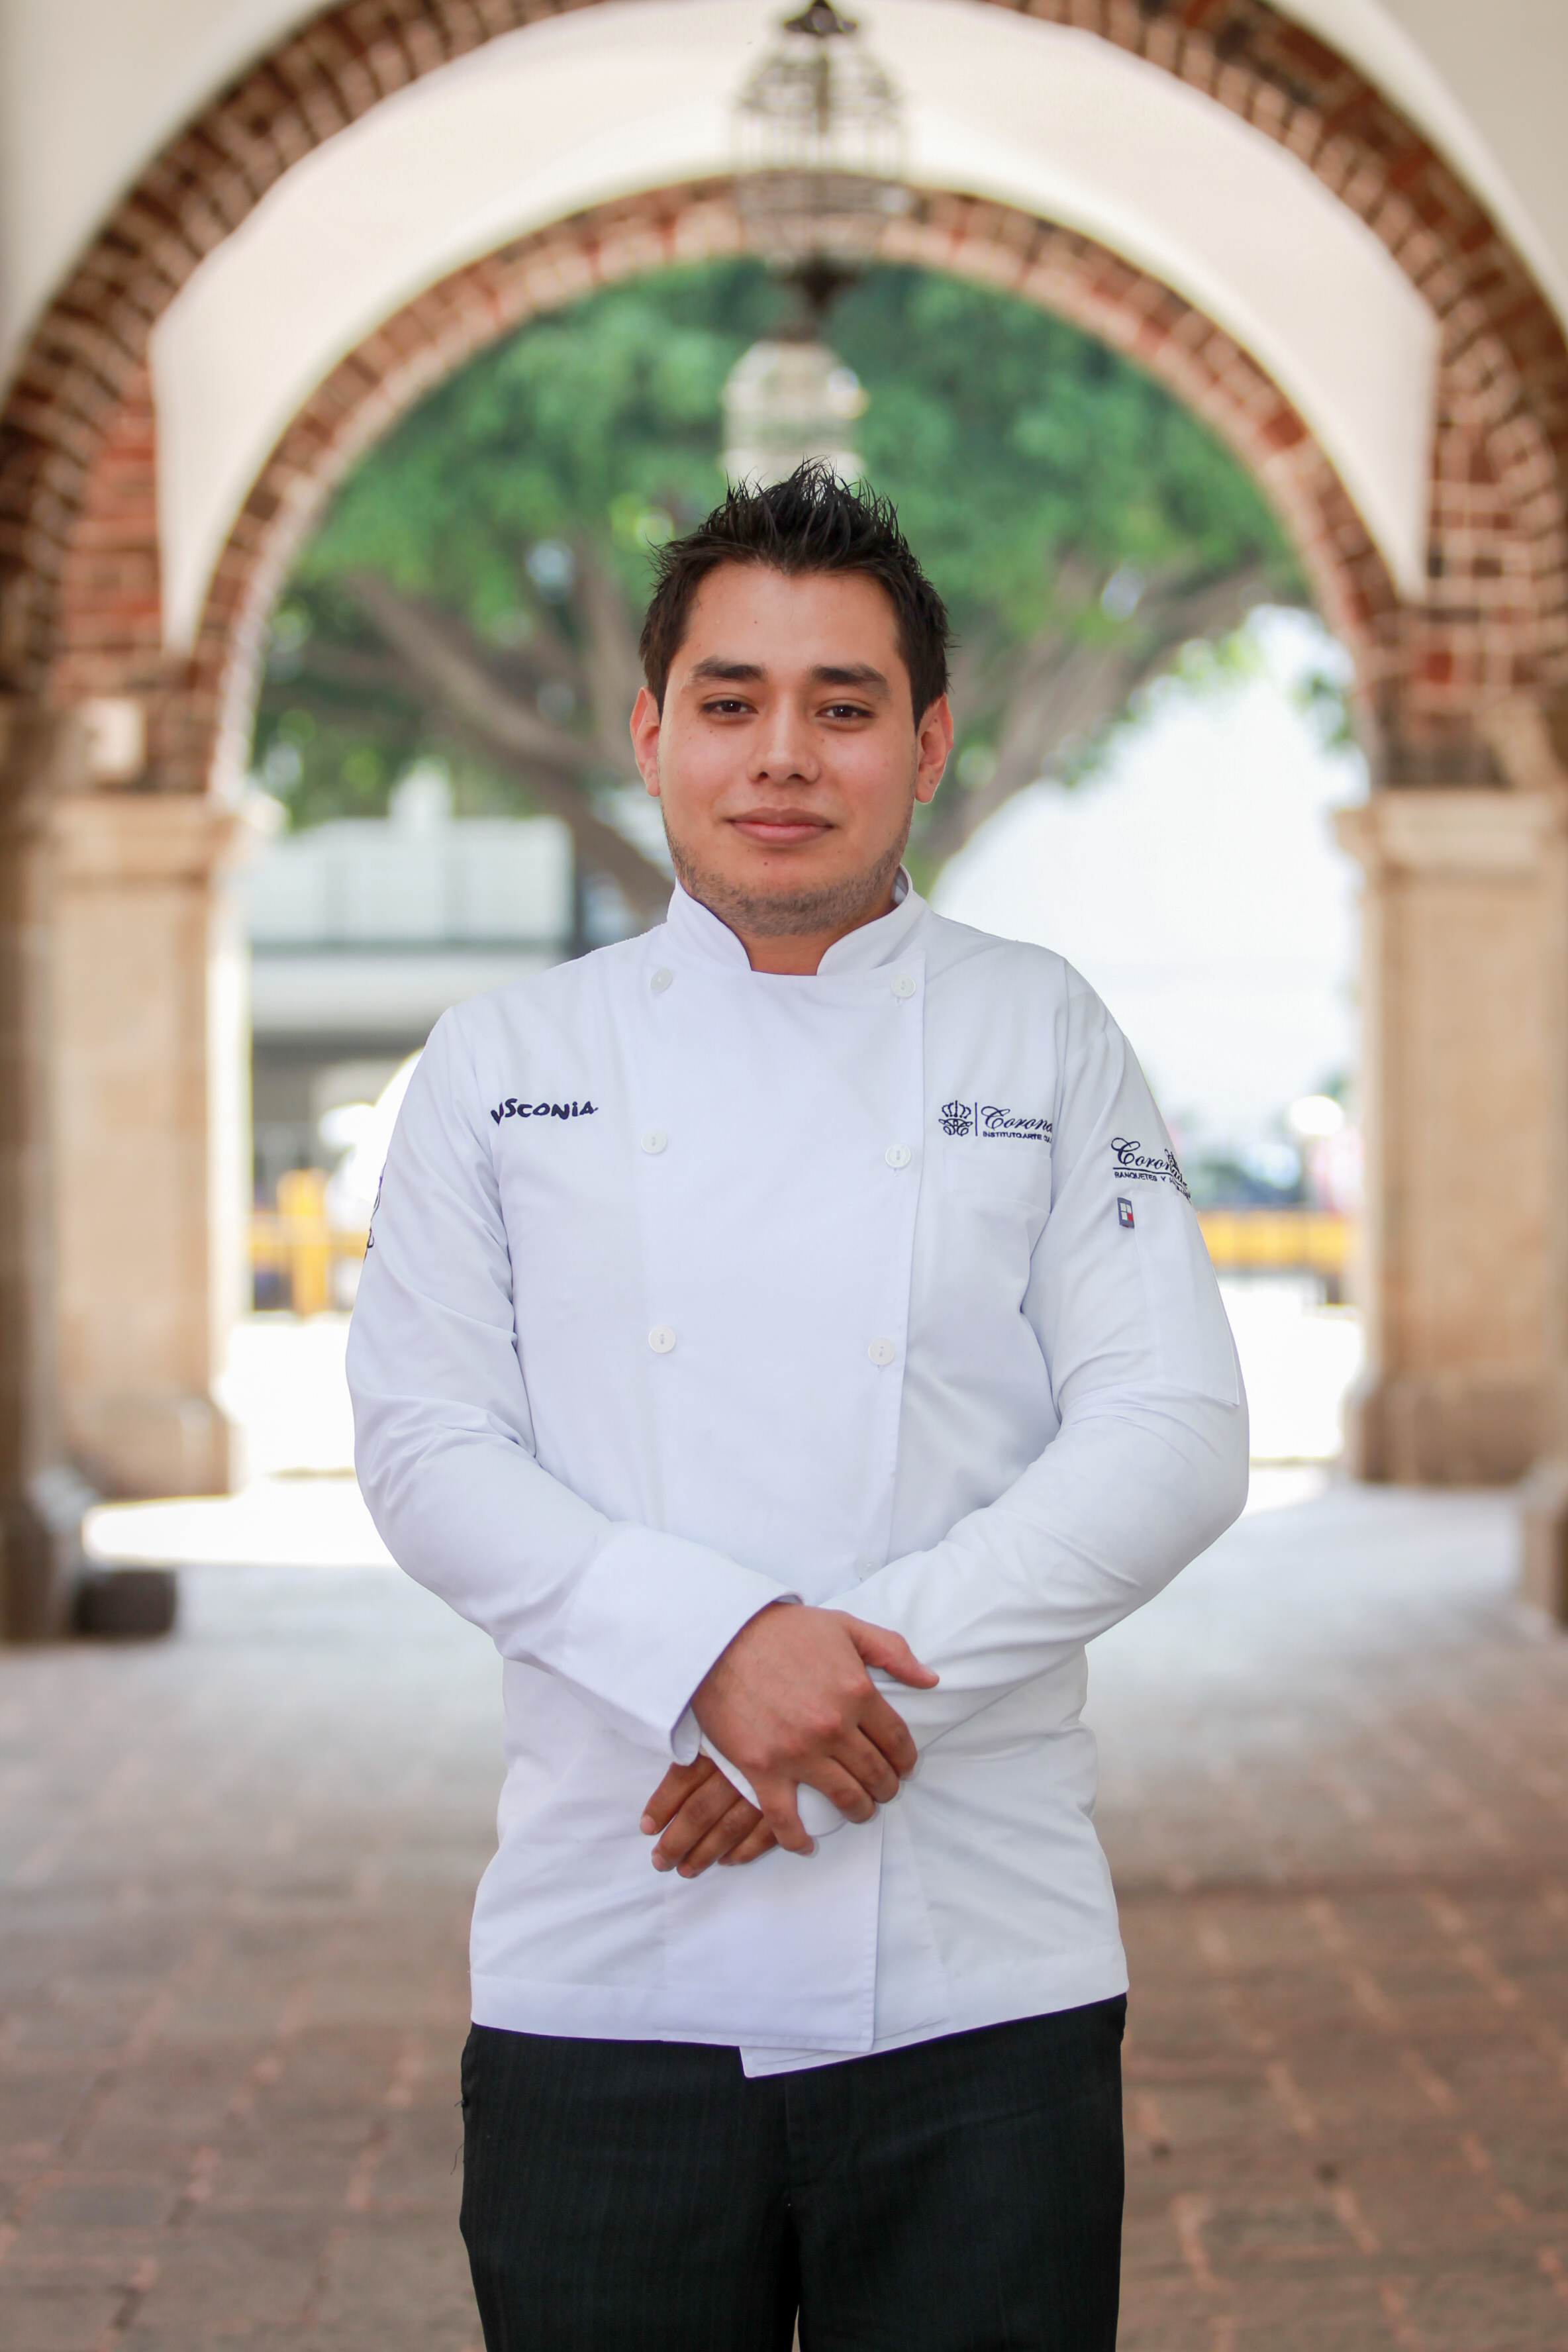 Carlos Díaz Peña.
Diploma en Artes Culinarias y Administración.
Instituto Arte Culinario Coronado.
Asignado a la Embajada de México en Perú.